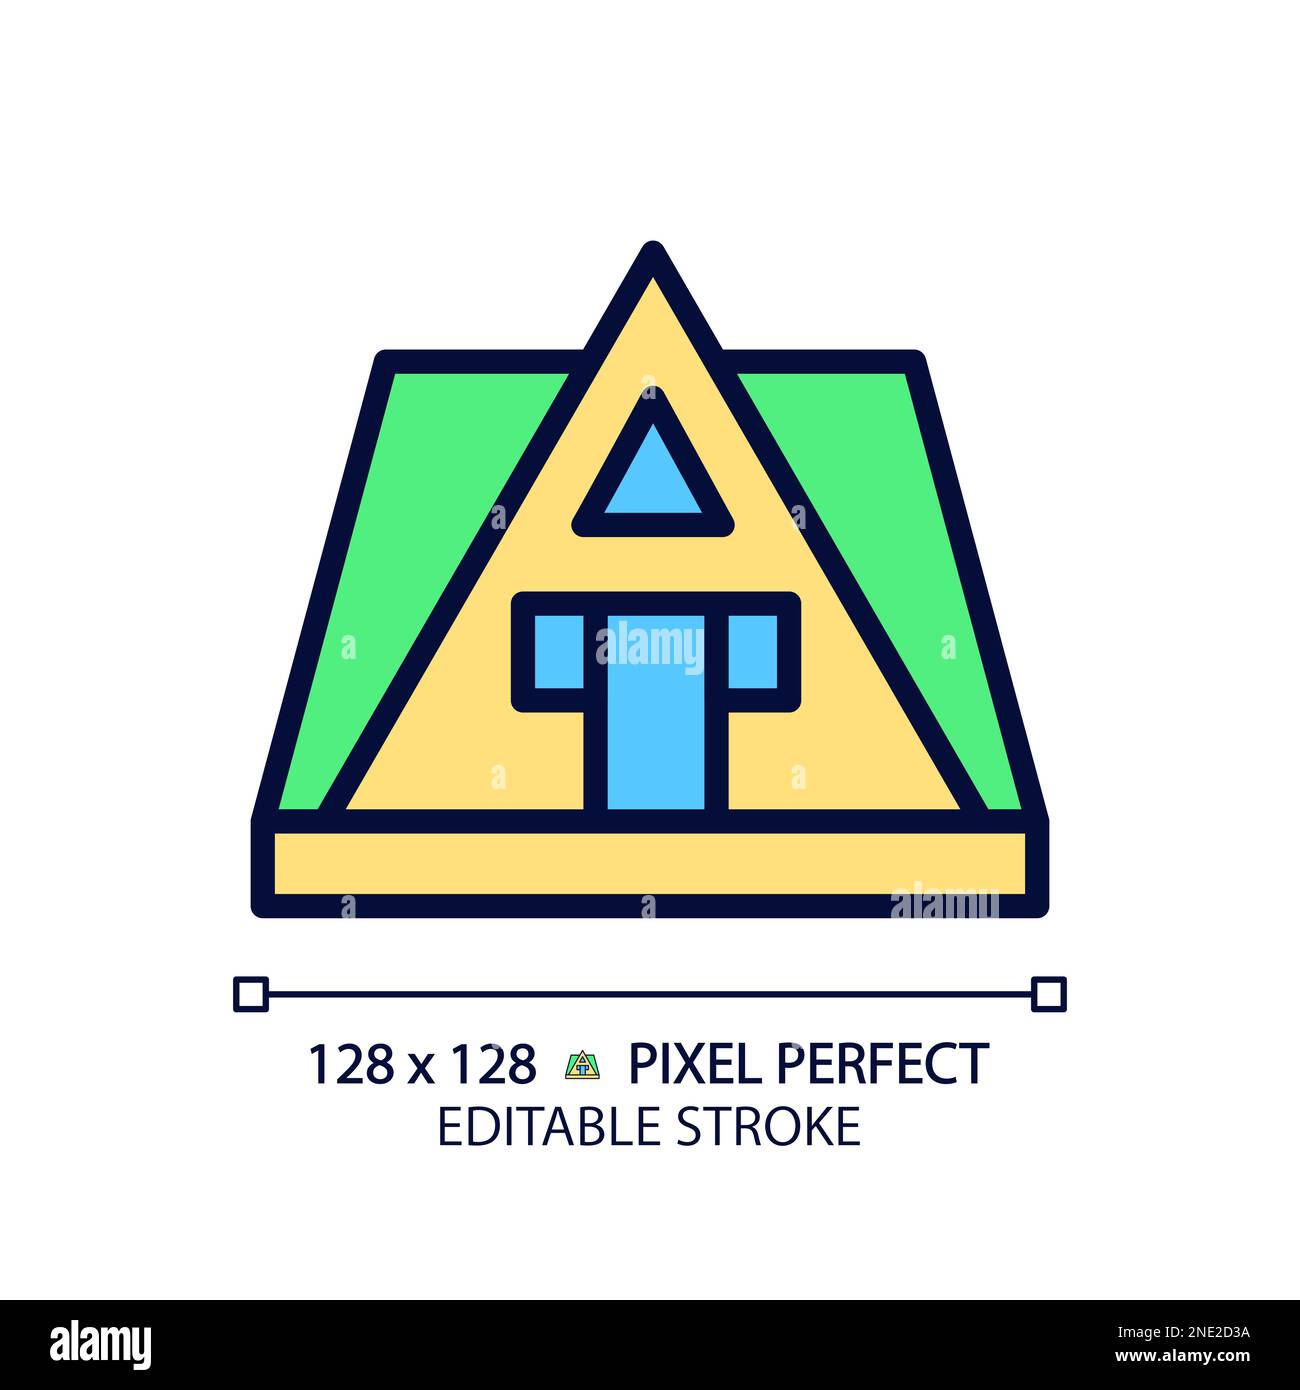 Icône de couleur RVB Perfect pixel de la maison à cadre A. Illustration de Vecteur